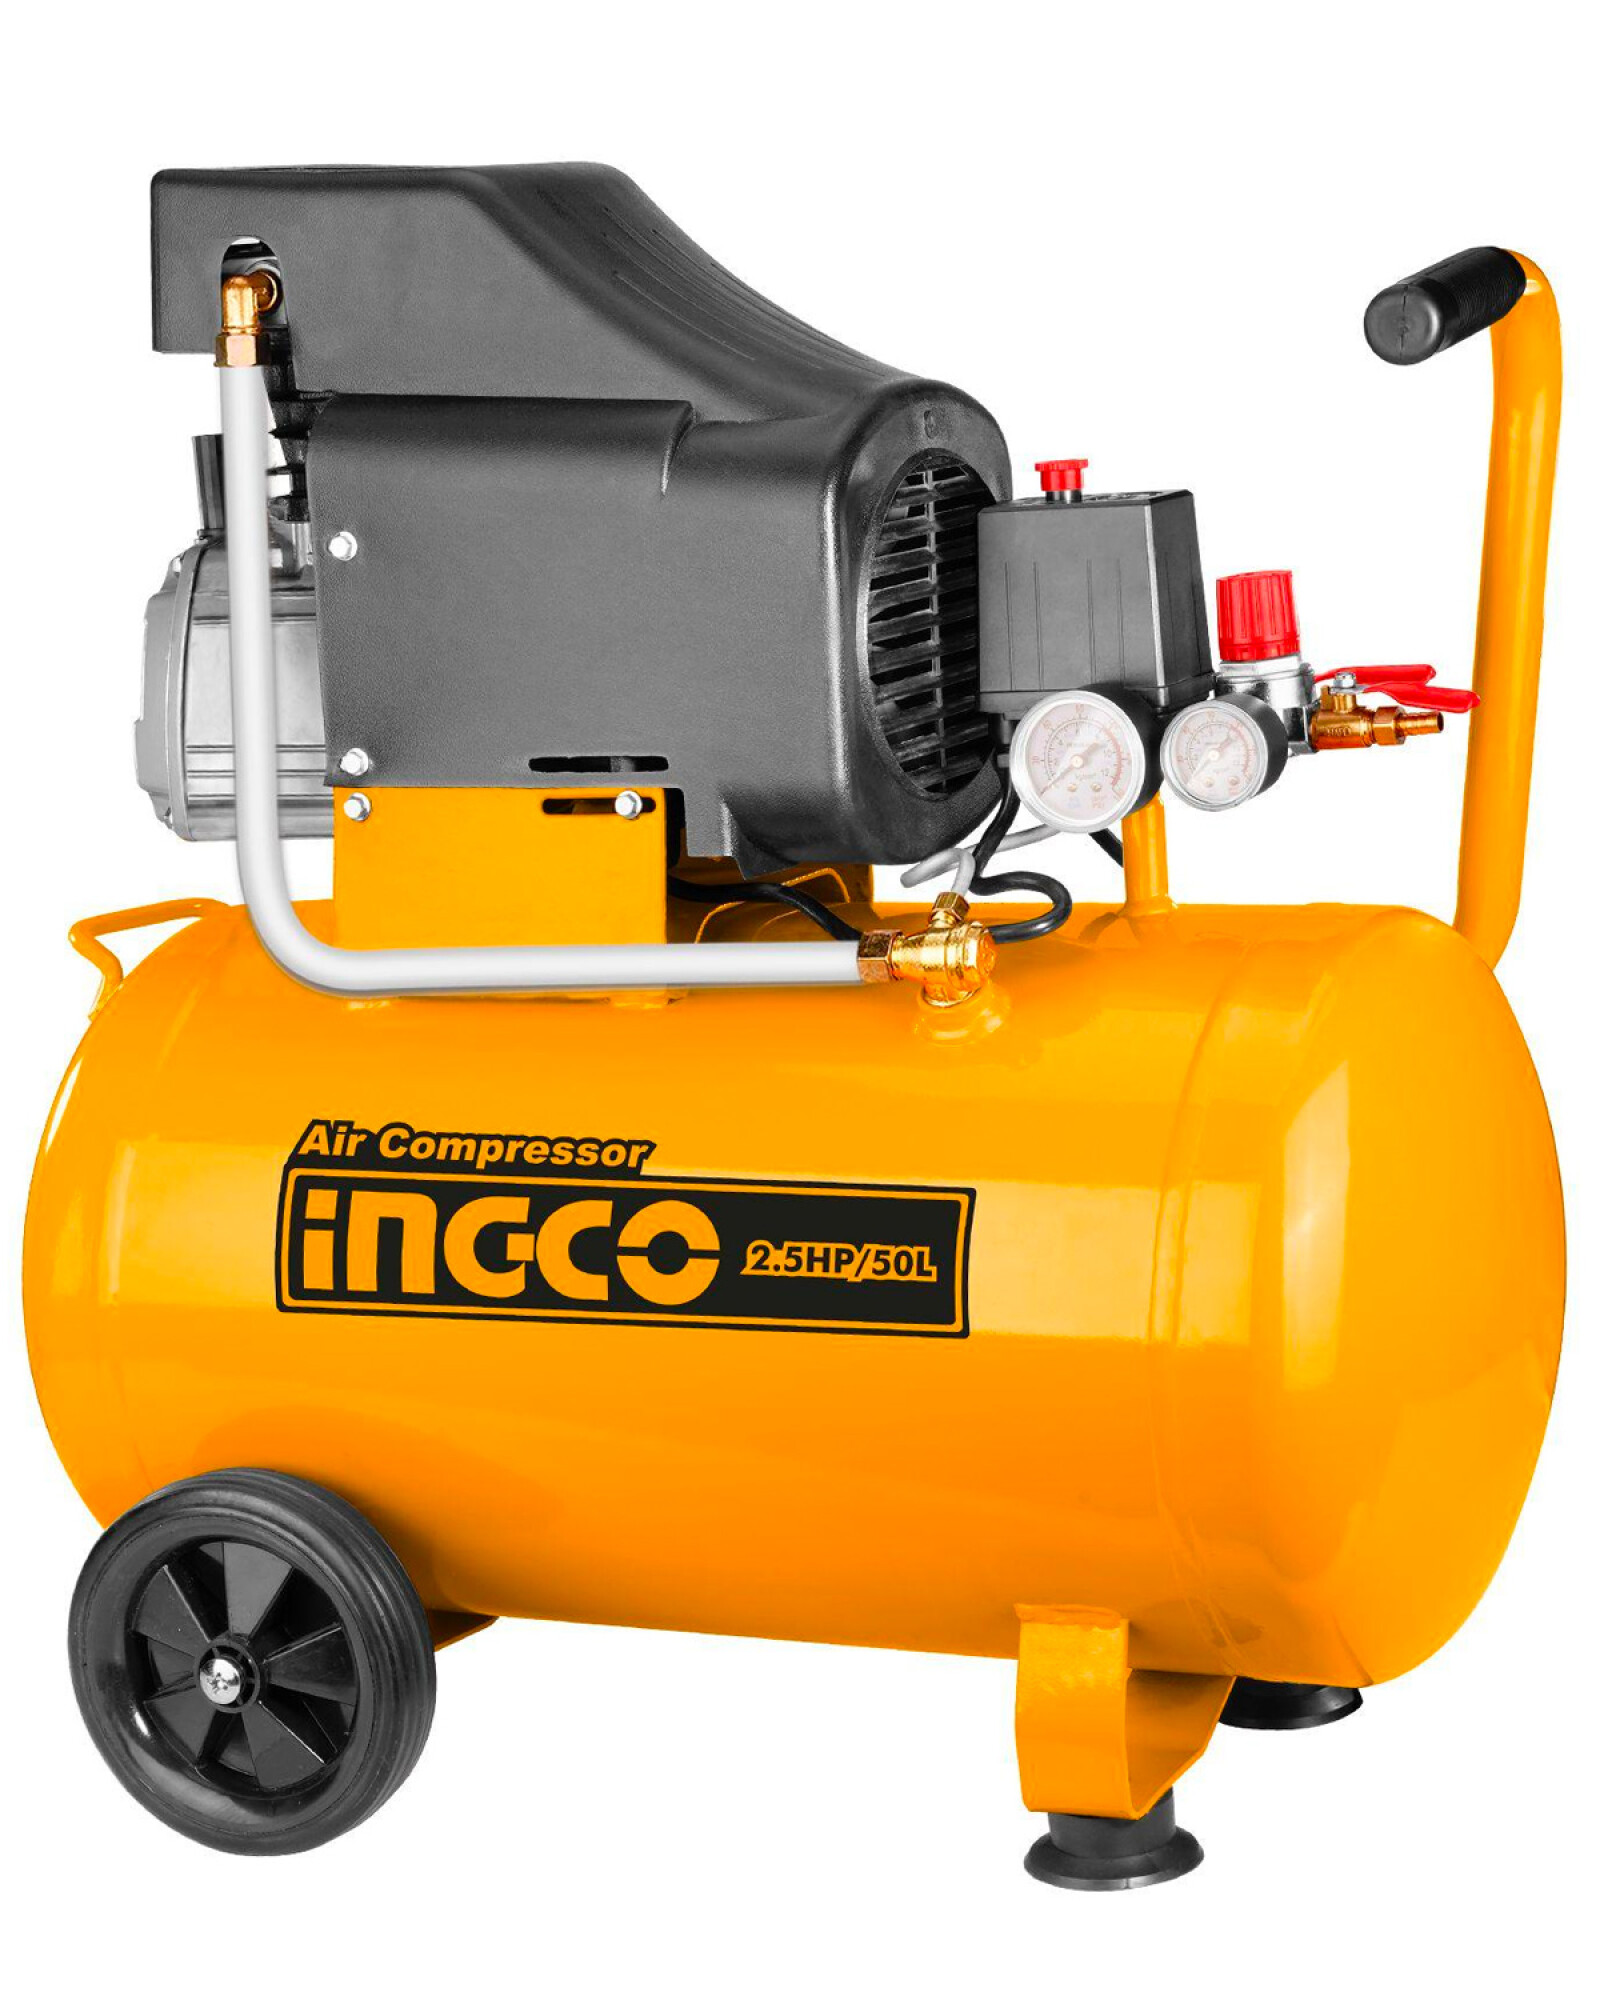 Compresor de aire Ingco AC255011 50 litros 2.5HP 8 Bar — Electroventas